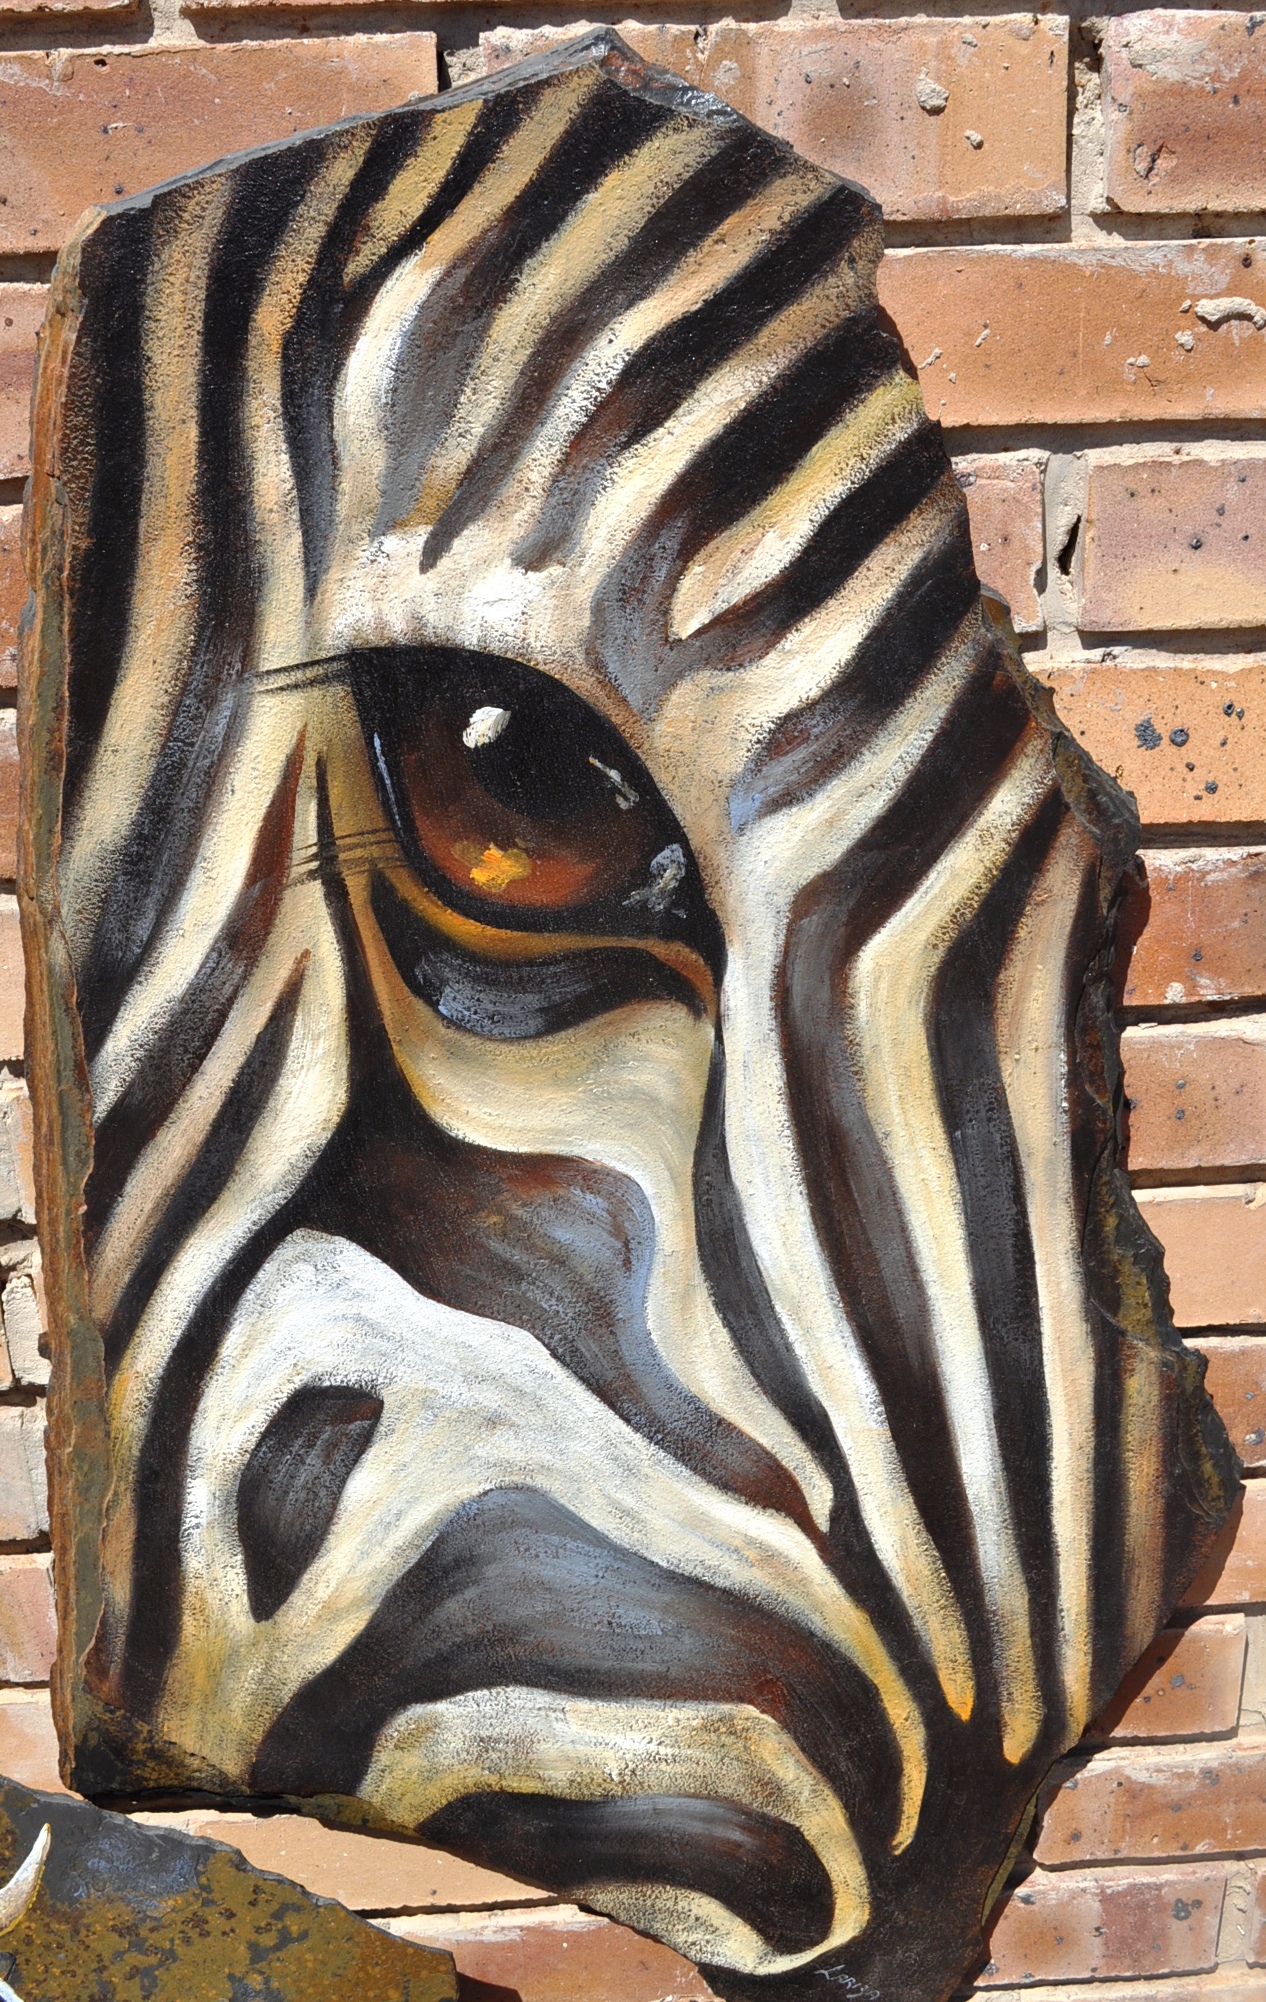 Zebra's eye photo